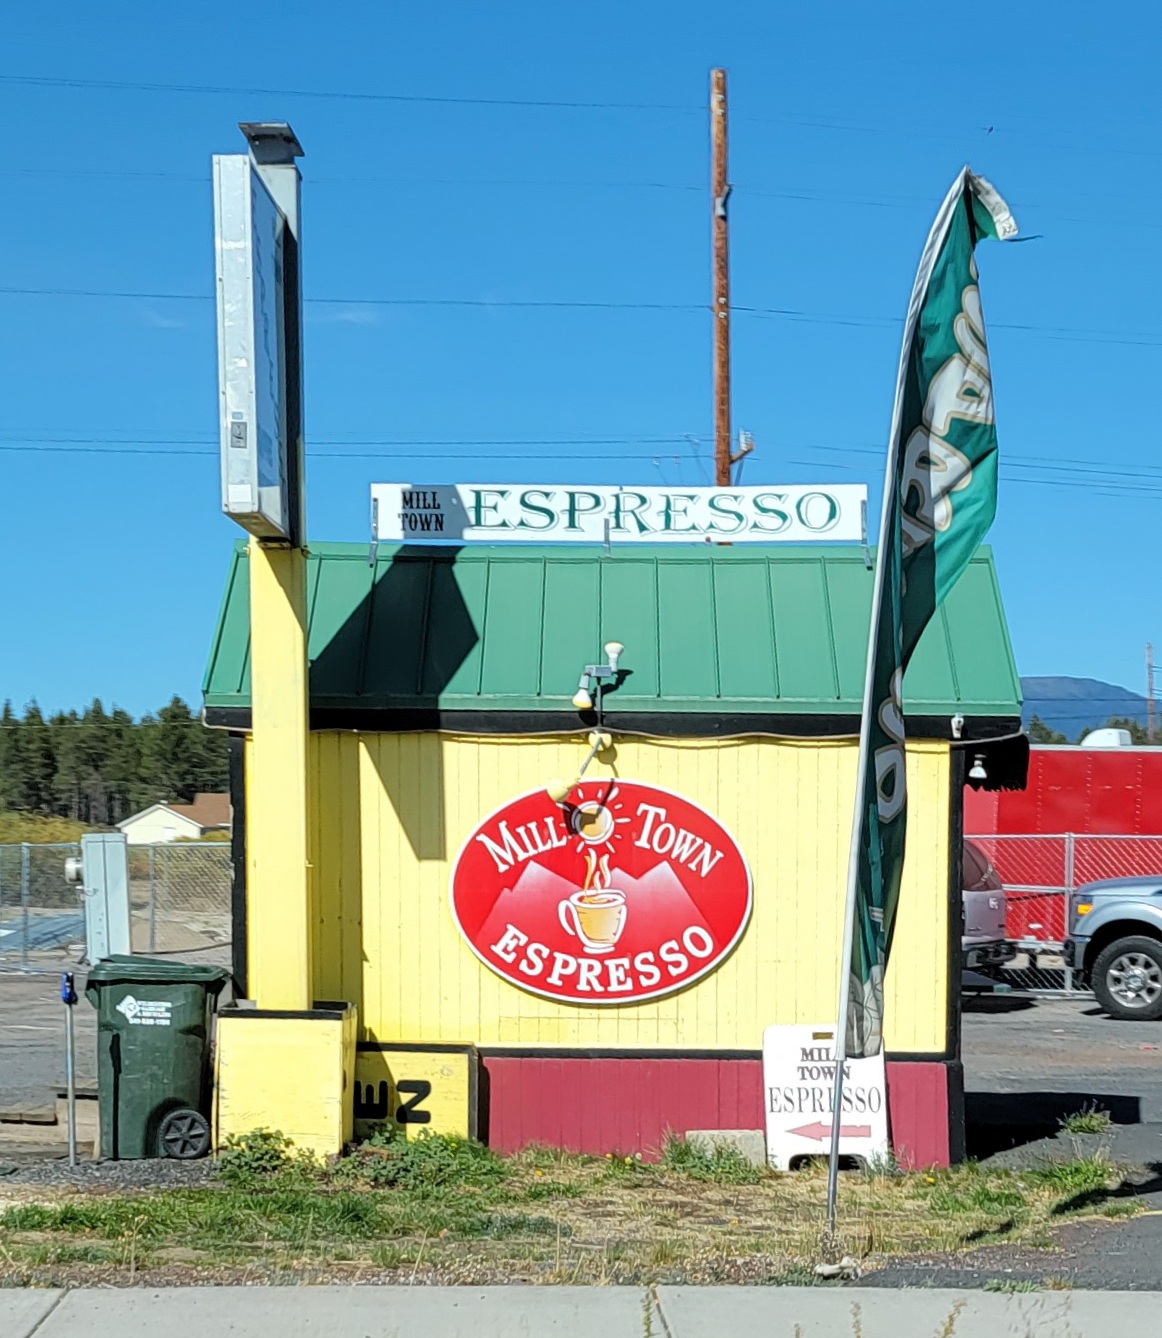 Mill town espresso